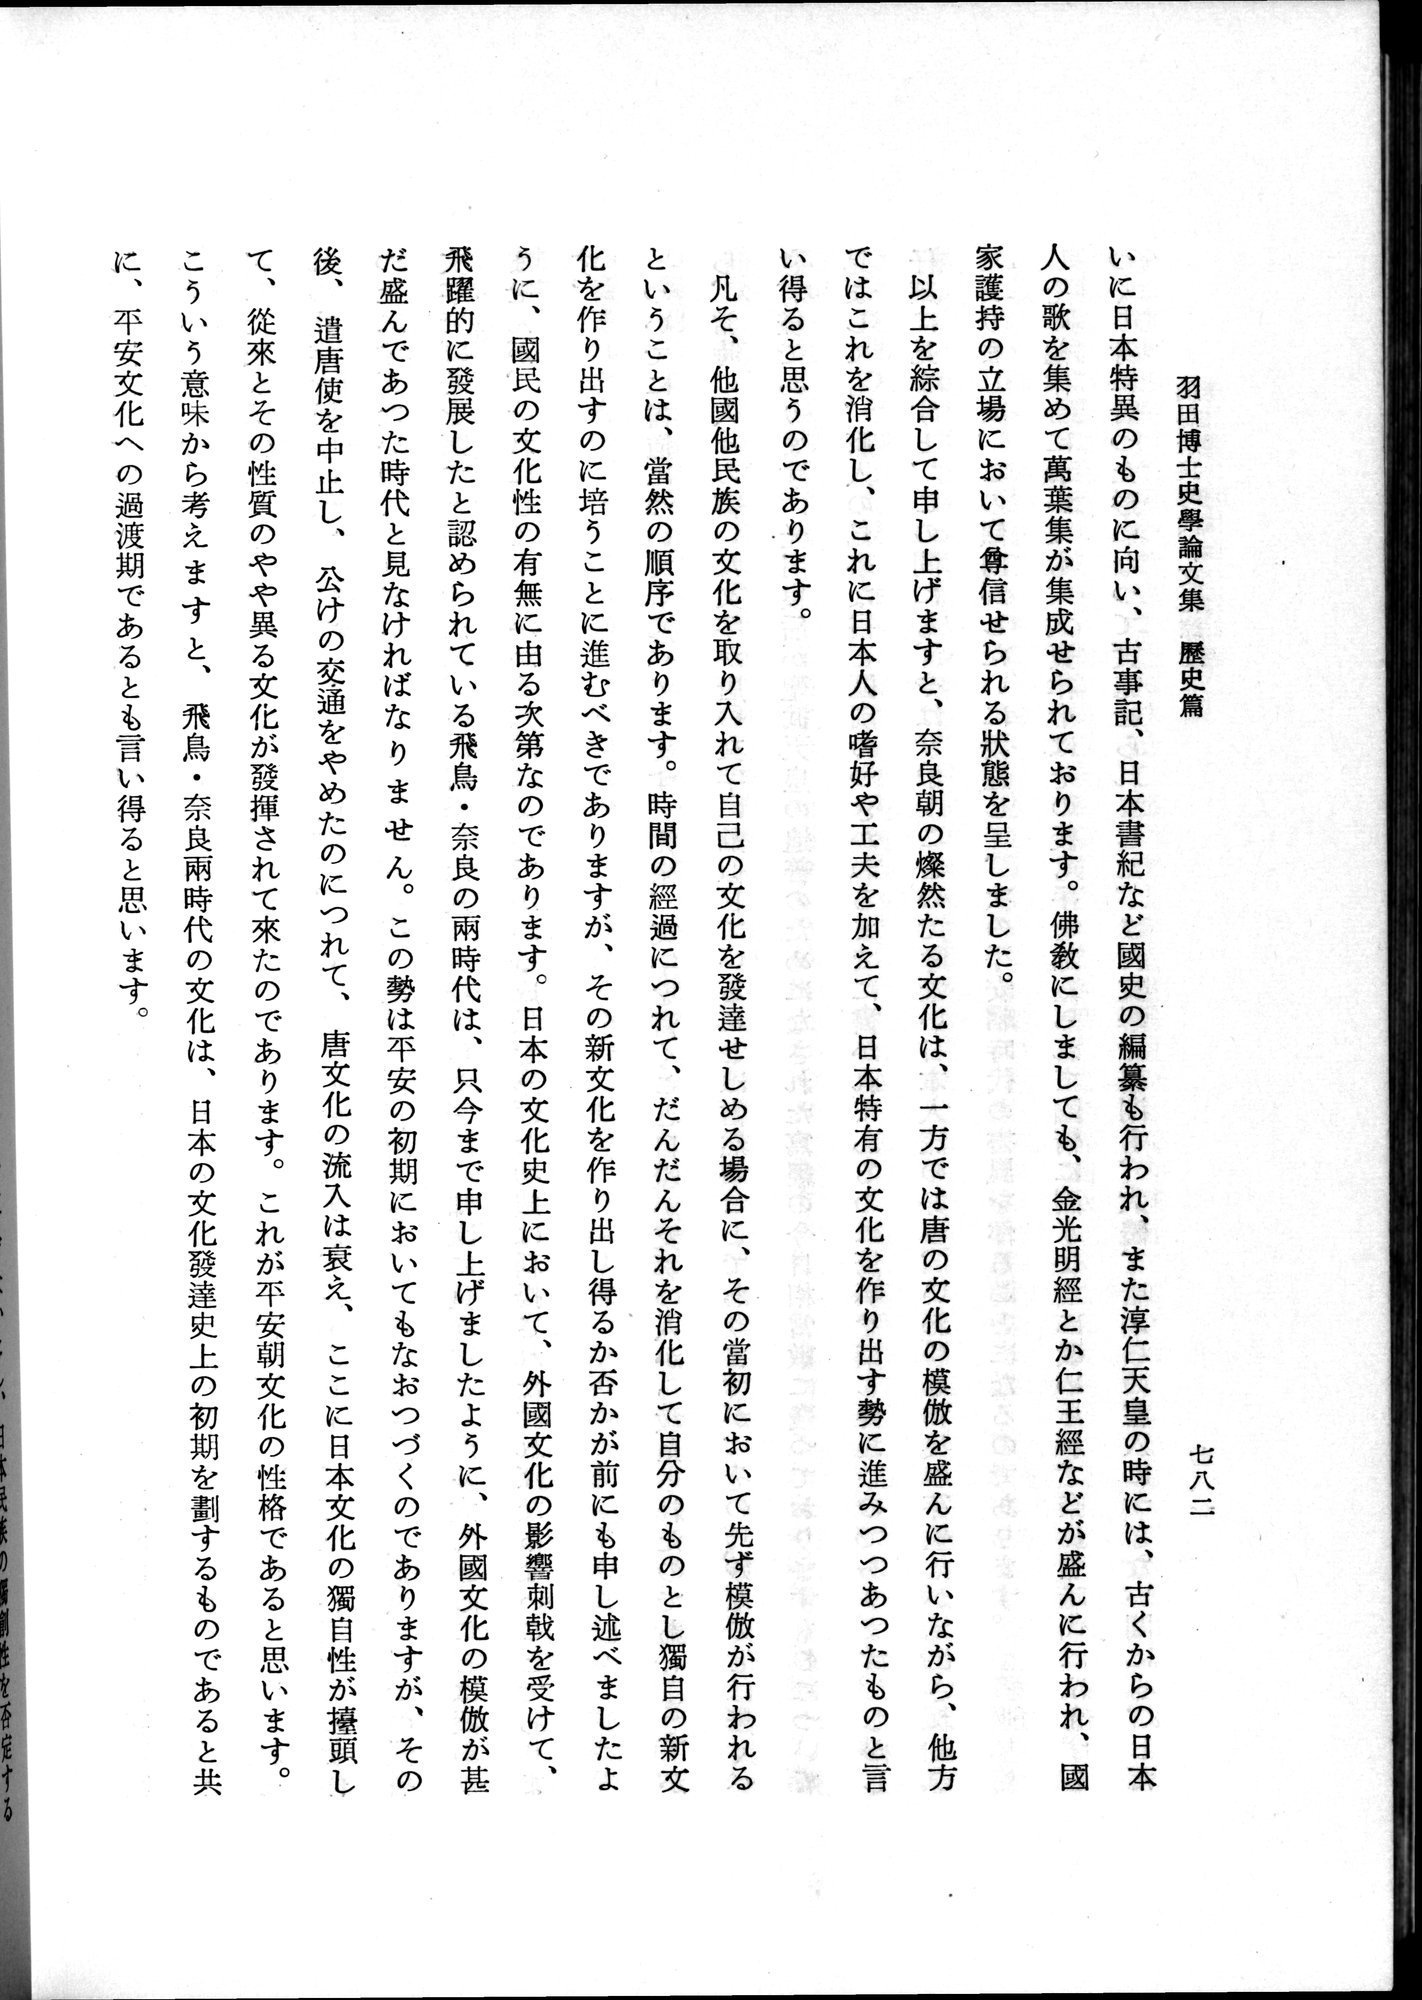 羽田博士史学論文集 : vol.1 / Page 820 (Grayscale High Resolution Image)